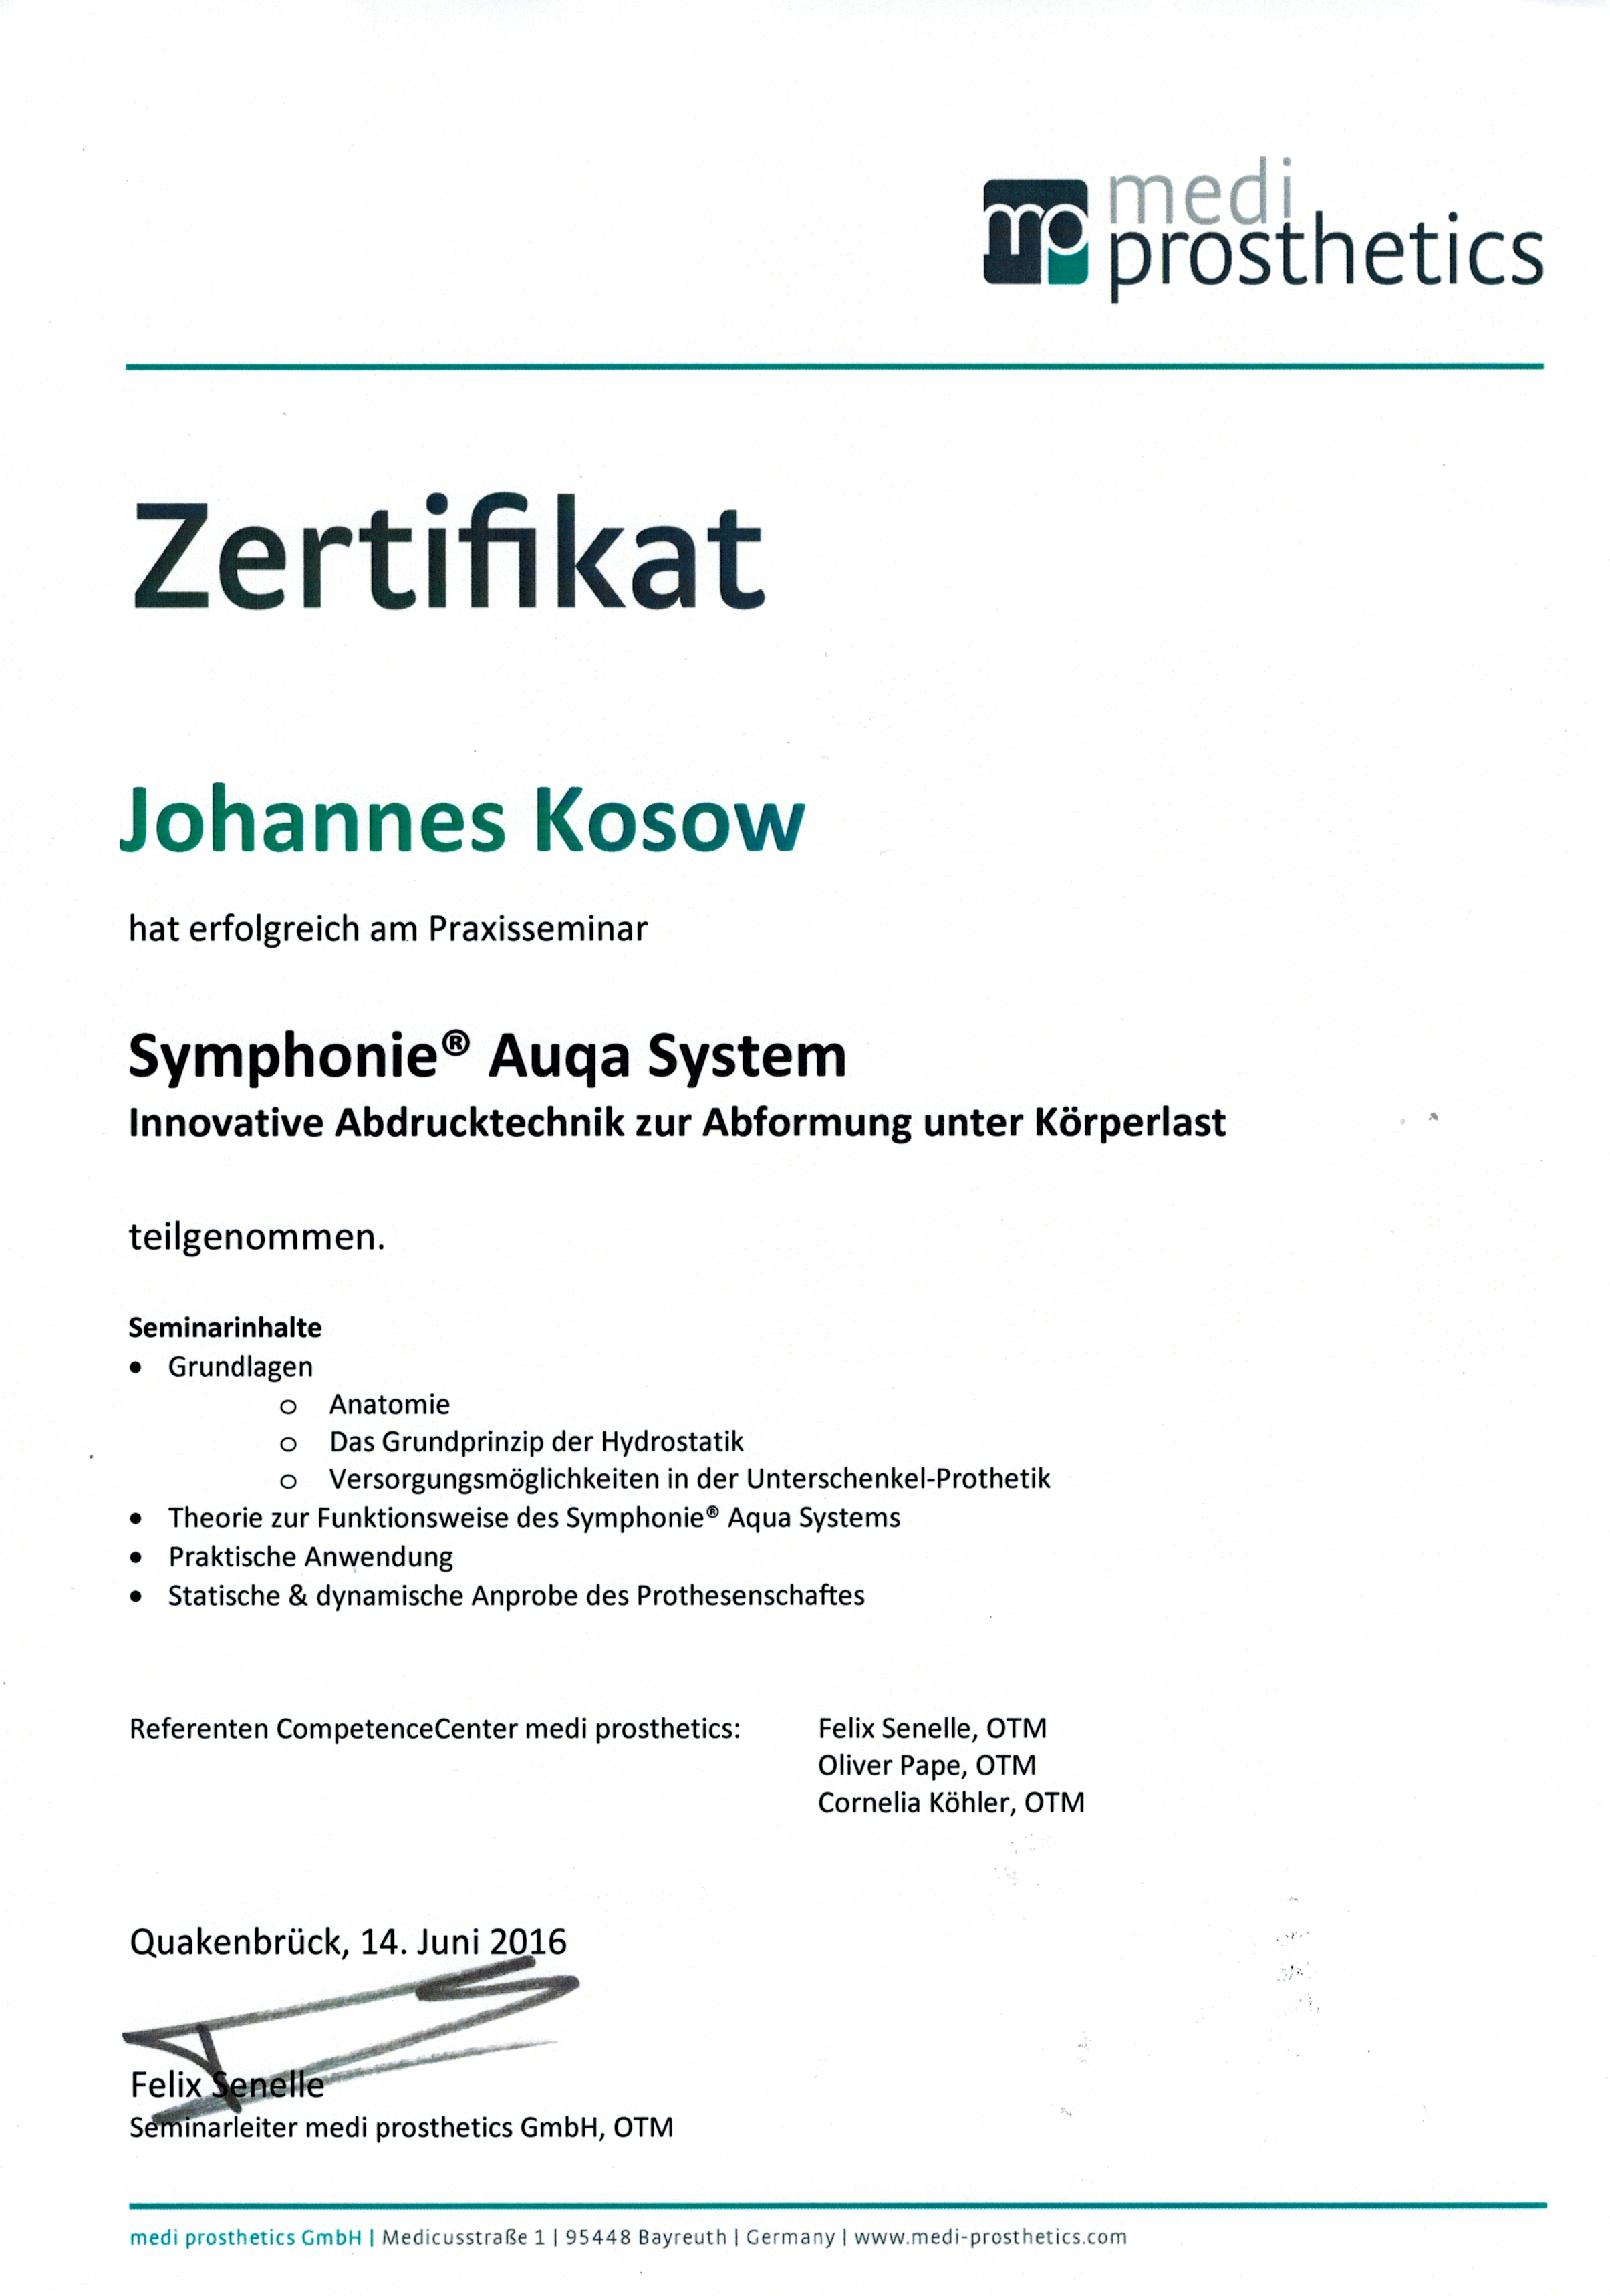 Synphonie Auqua System Johannes Zertifikat02092016